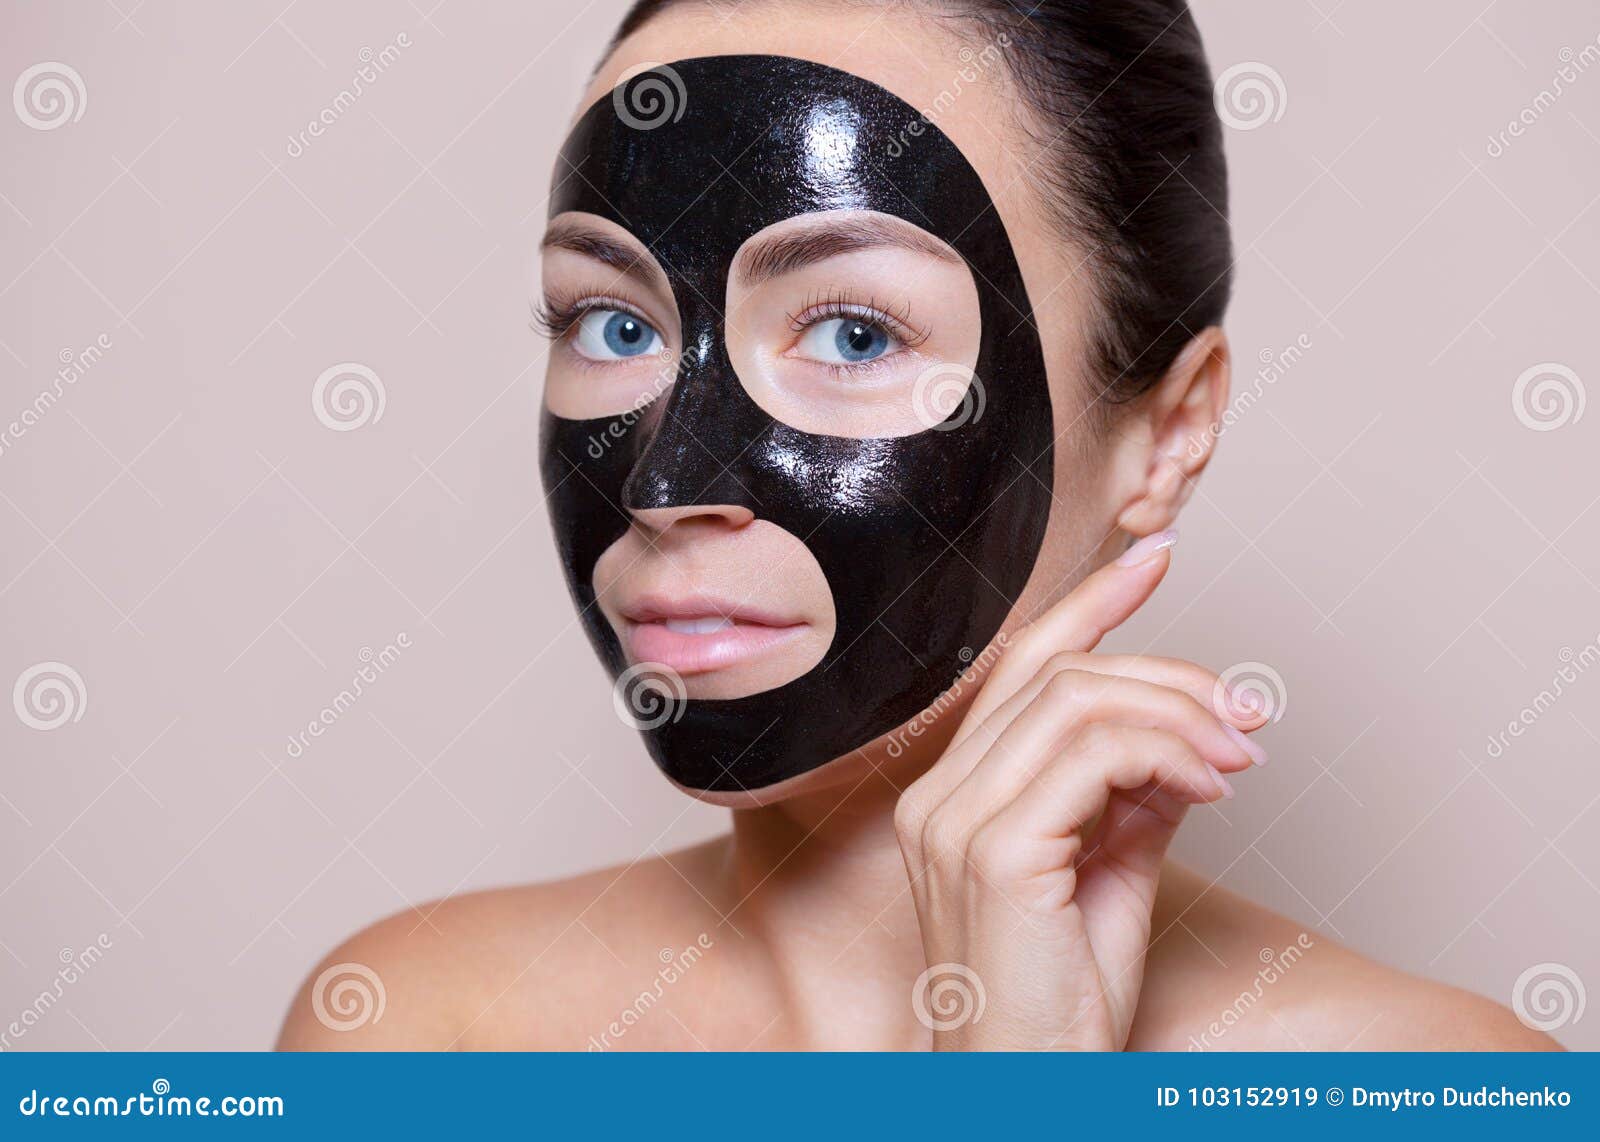 Voorvoegsel pack Raap Zwart Masker Op Het Gezicht Van Een Mooie Vrouw Kuuroordbehandelingen En  Huidzorg in De Schoonheidssalon Stock Afbeelding - Image of masker,  dermatologie: 103152919